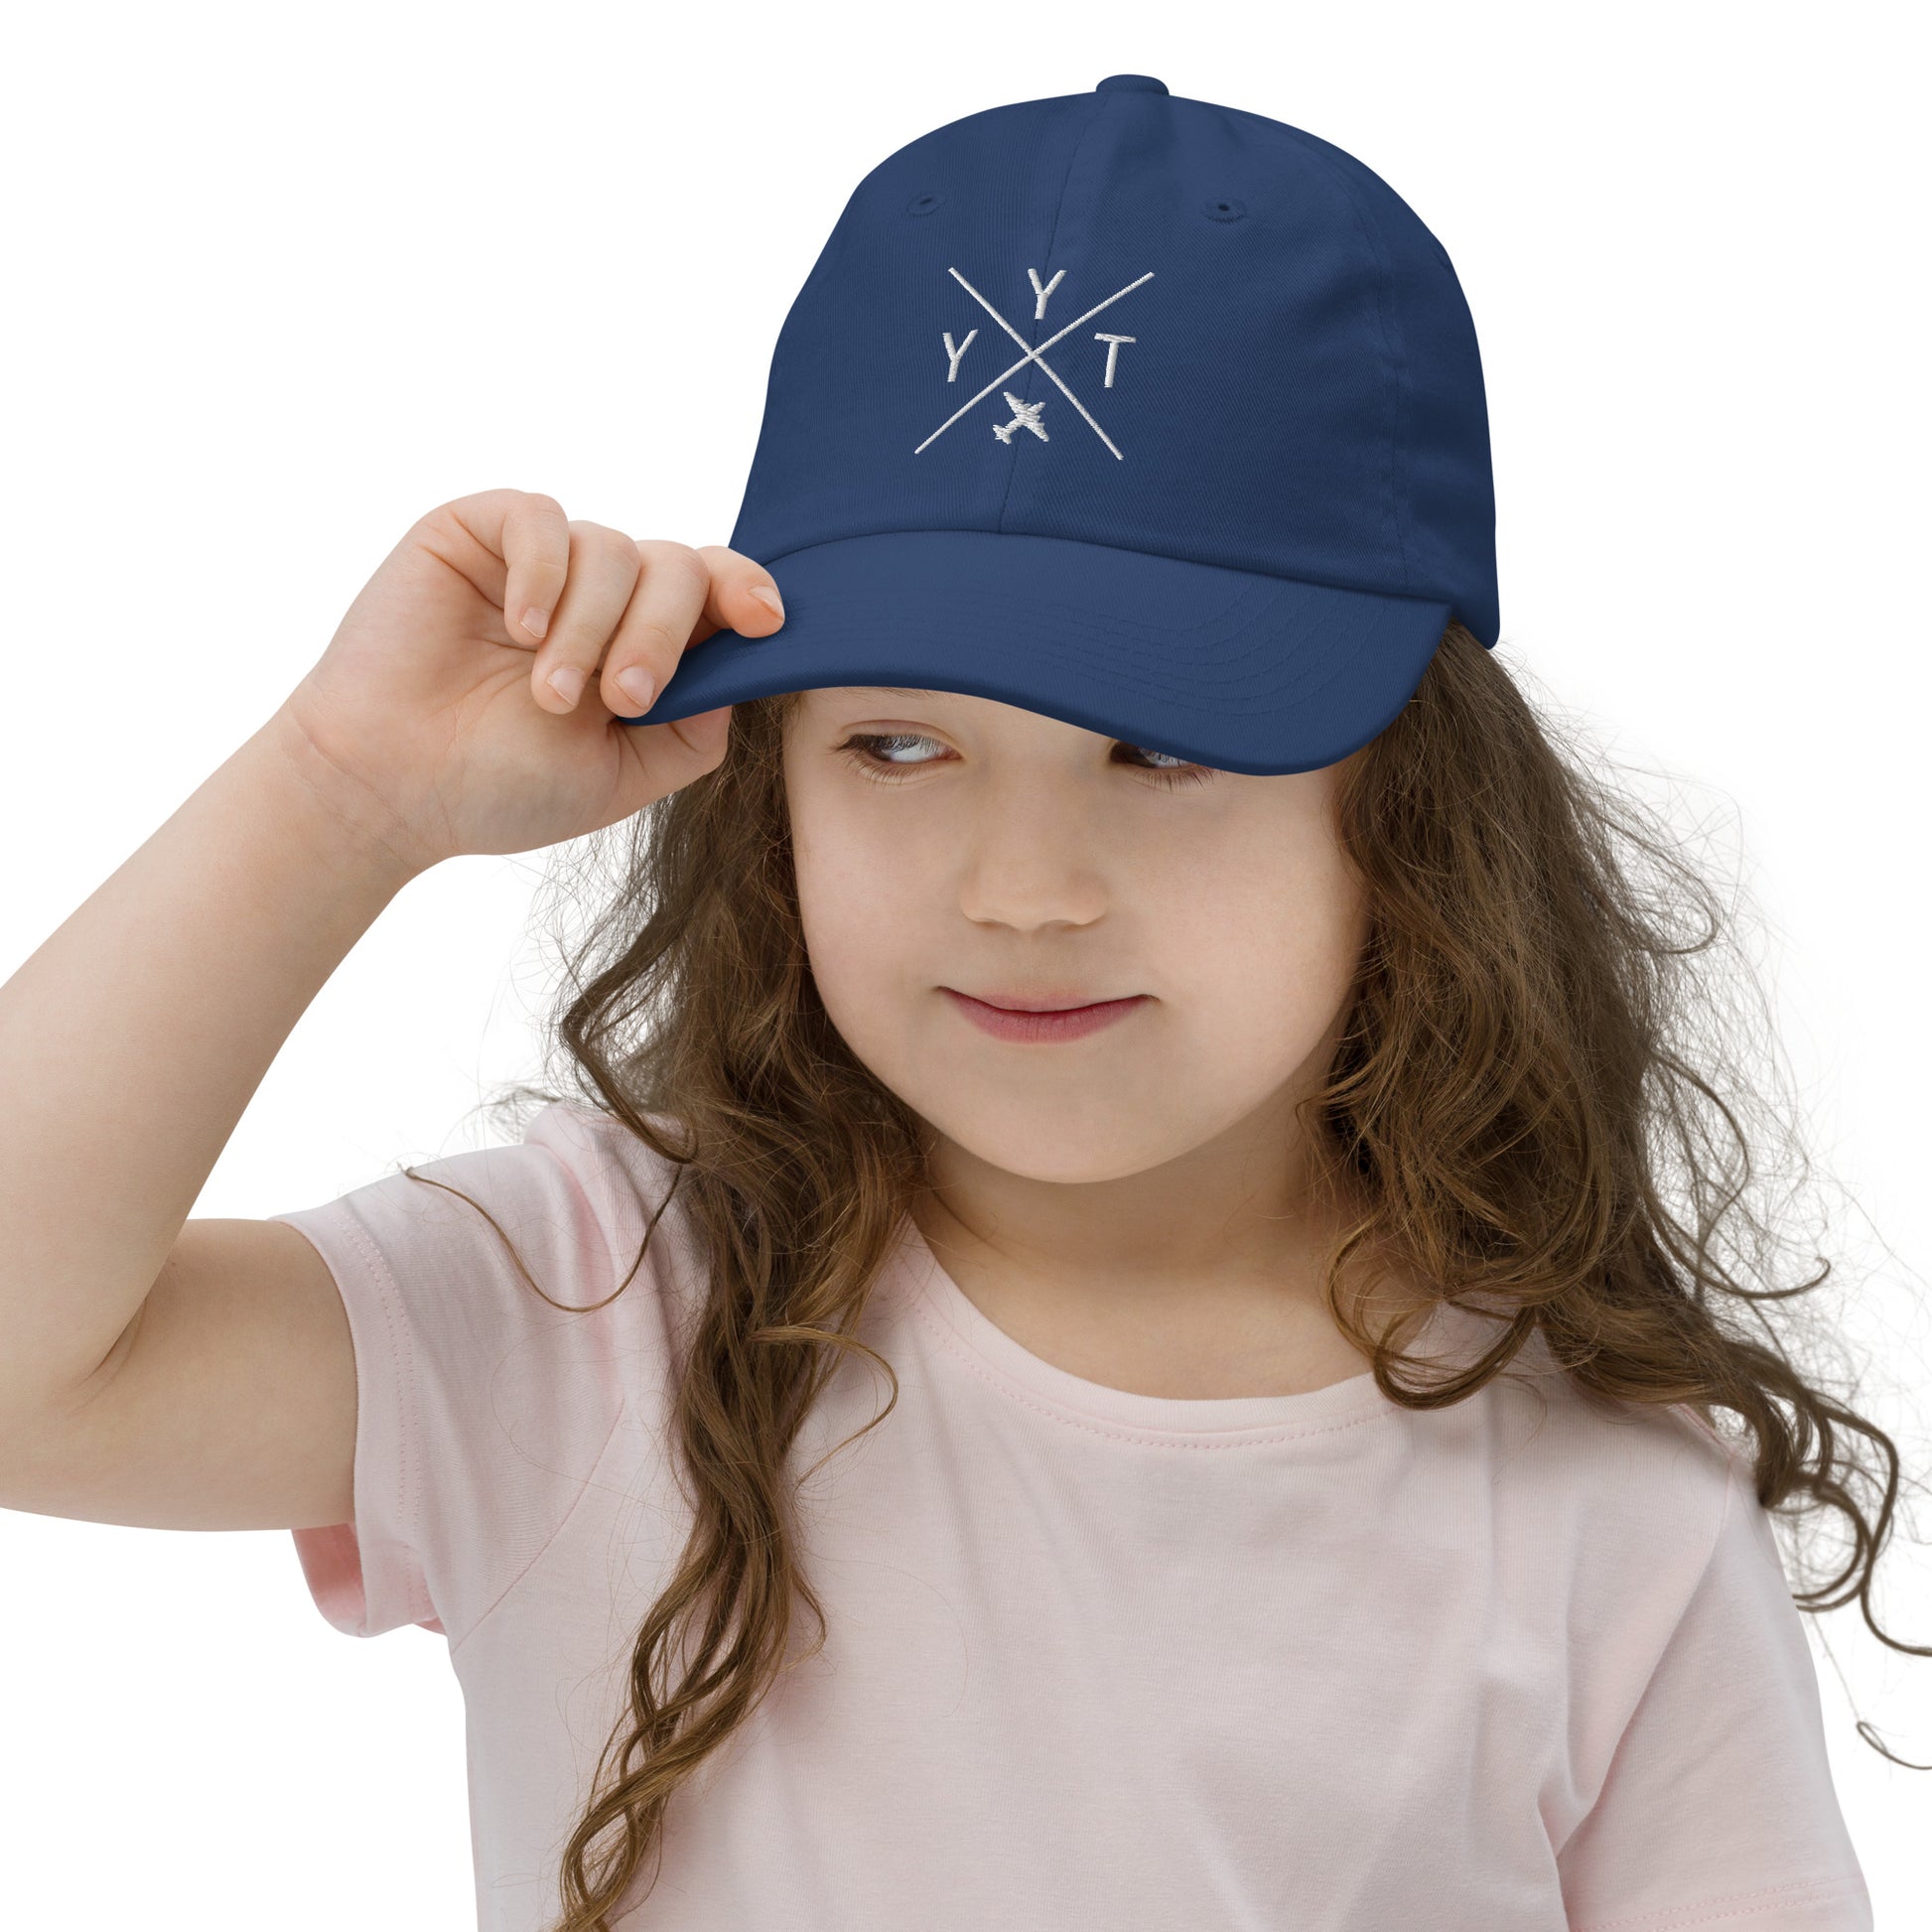 Crossed-X Kid's Baseball Cap - White • YYT St. John's • YHM Designs - Image 05